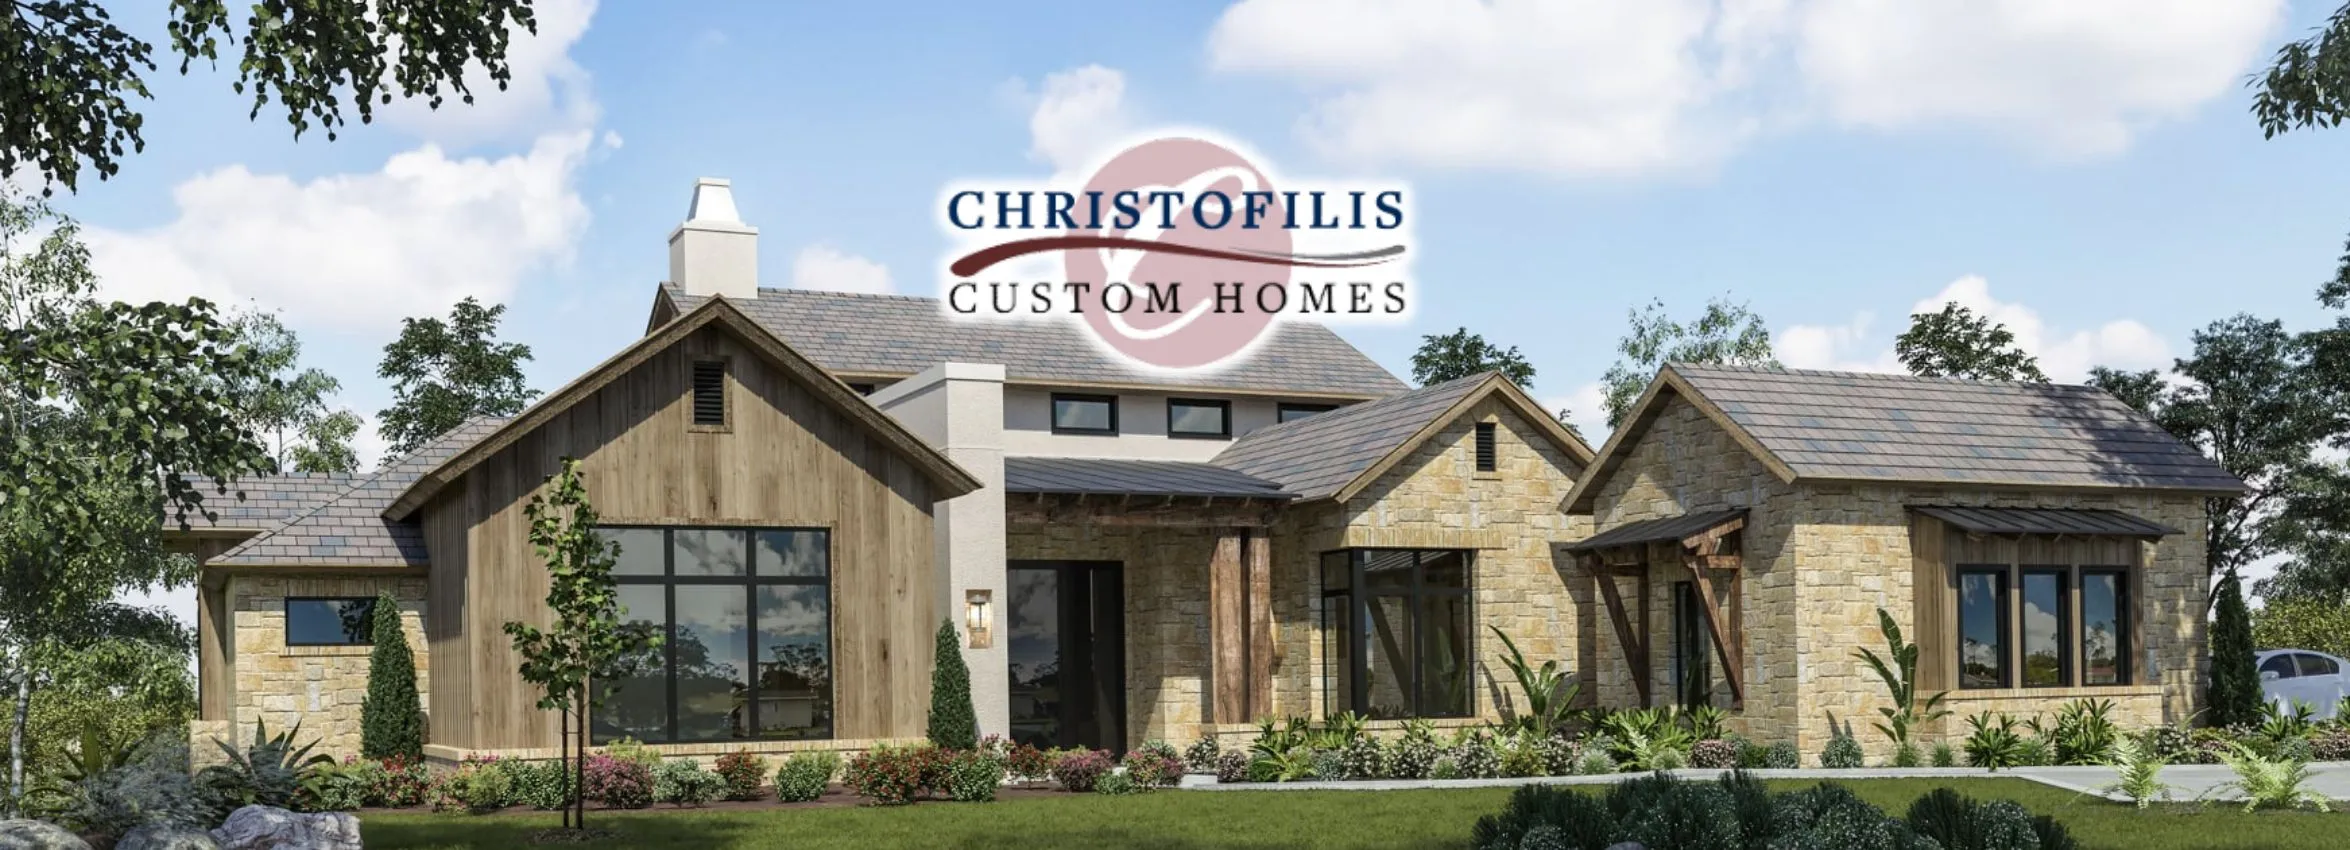 Christofilis-Custom-Homes_Desktop_ET